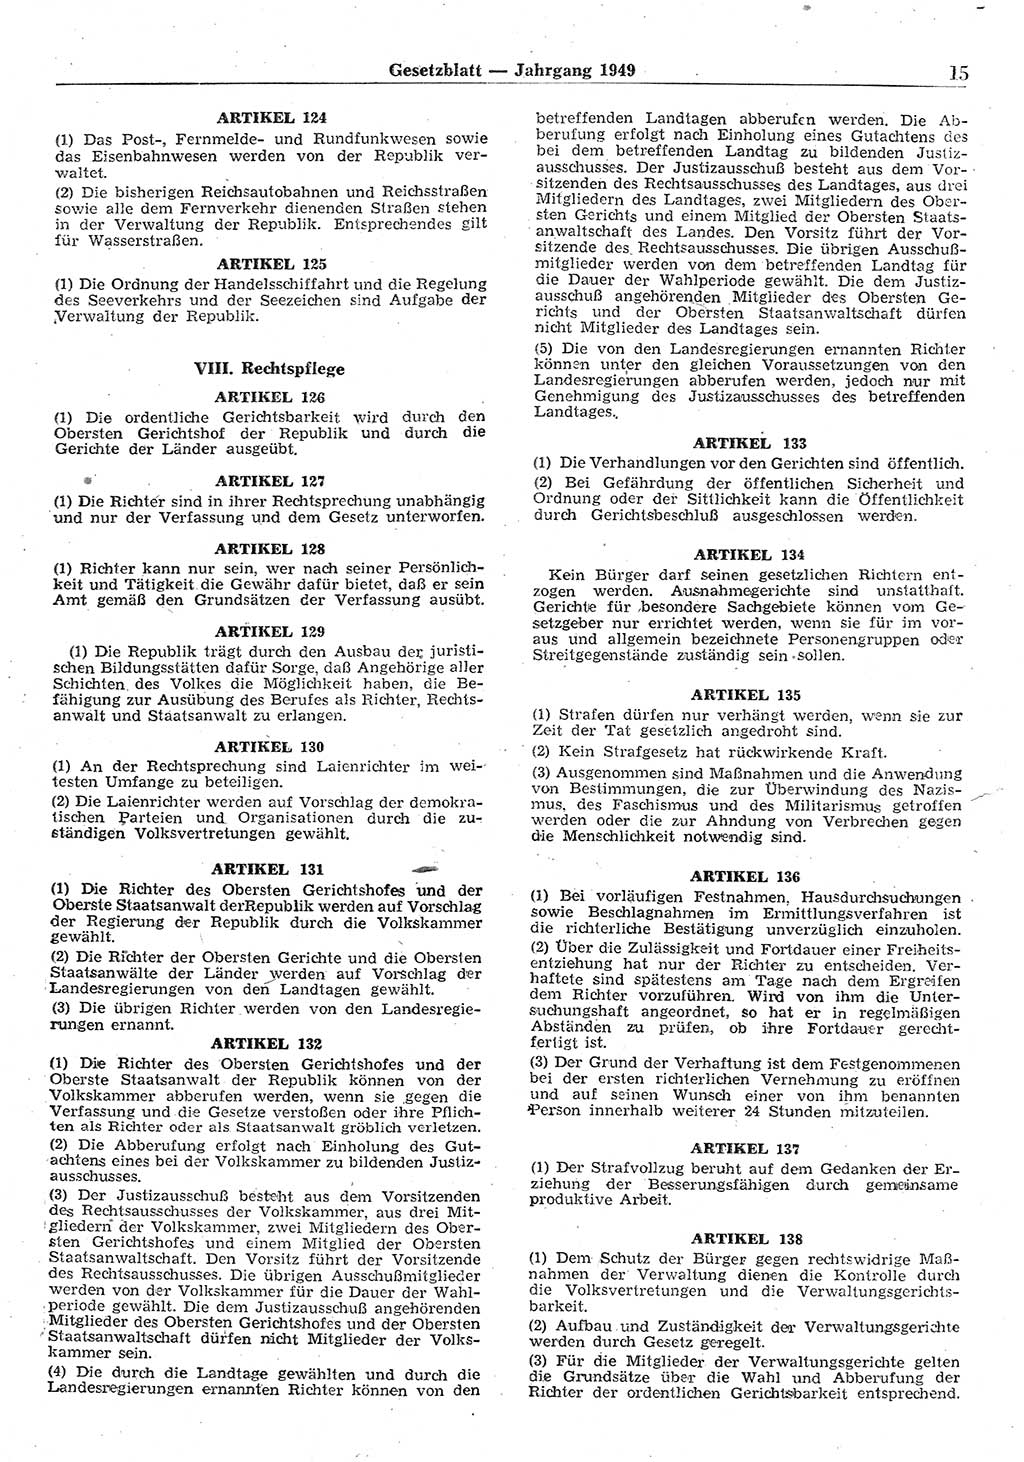 Gesetzblatt (GBl.) der Deutschen Demokratischen Republik (DDR) 1949, Seite 15 (GBl. DDR 1949, S. 15)